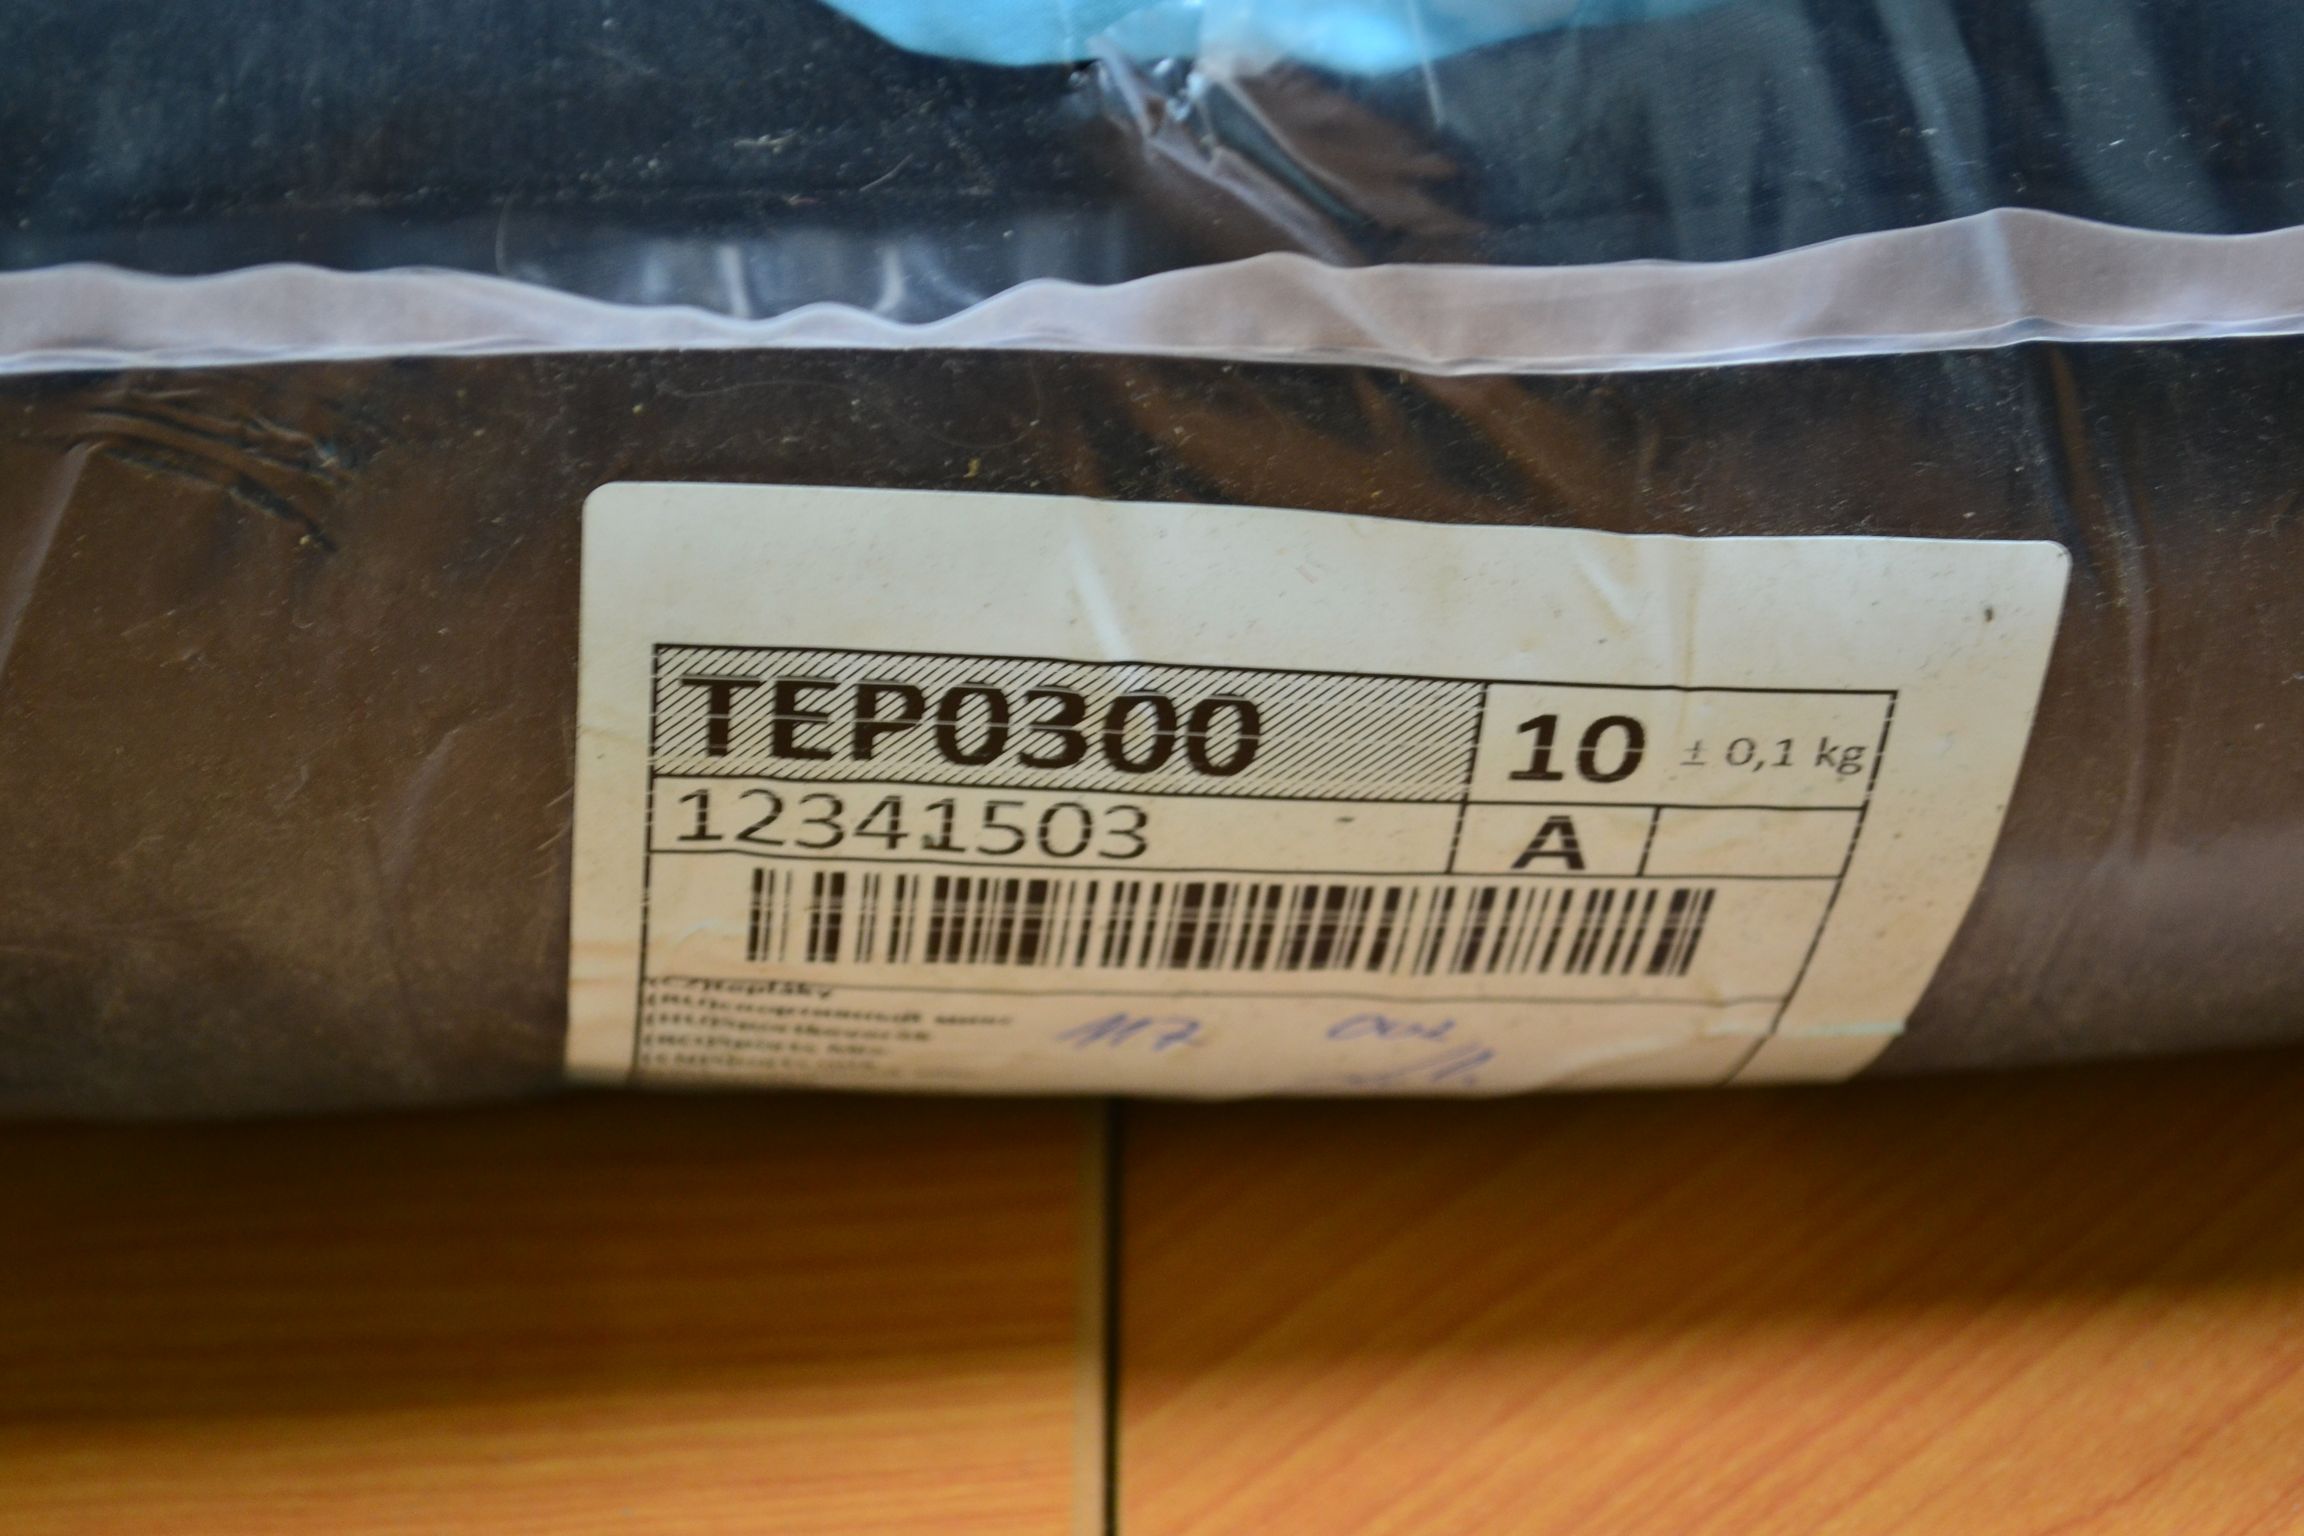 TEP0300 Спортивная смесь; код мешка 12341503